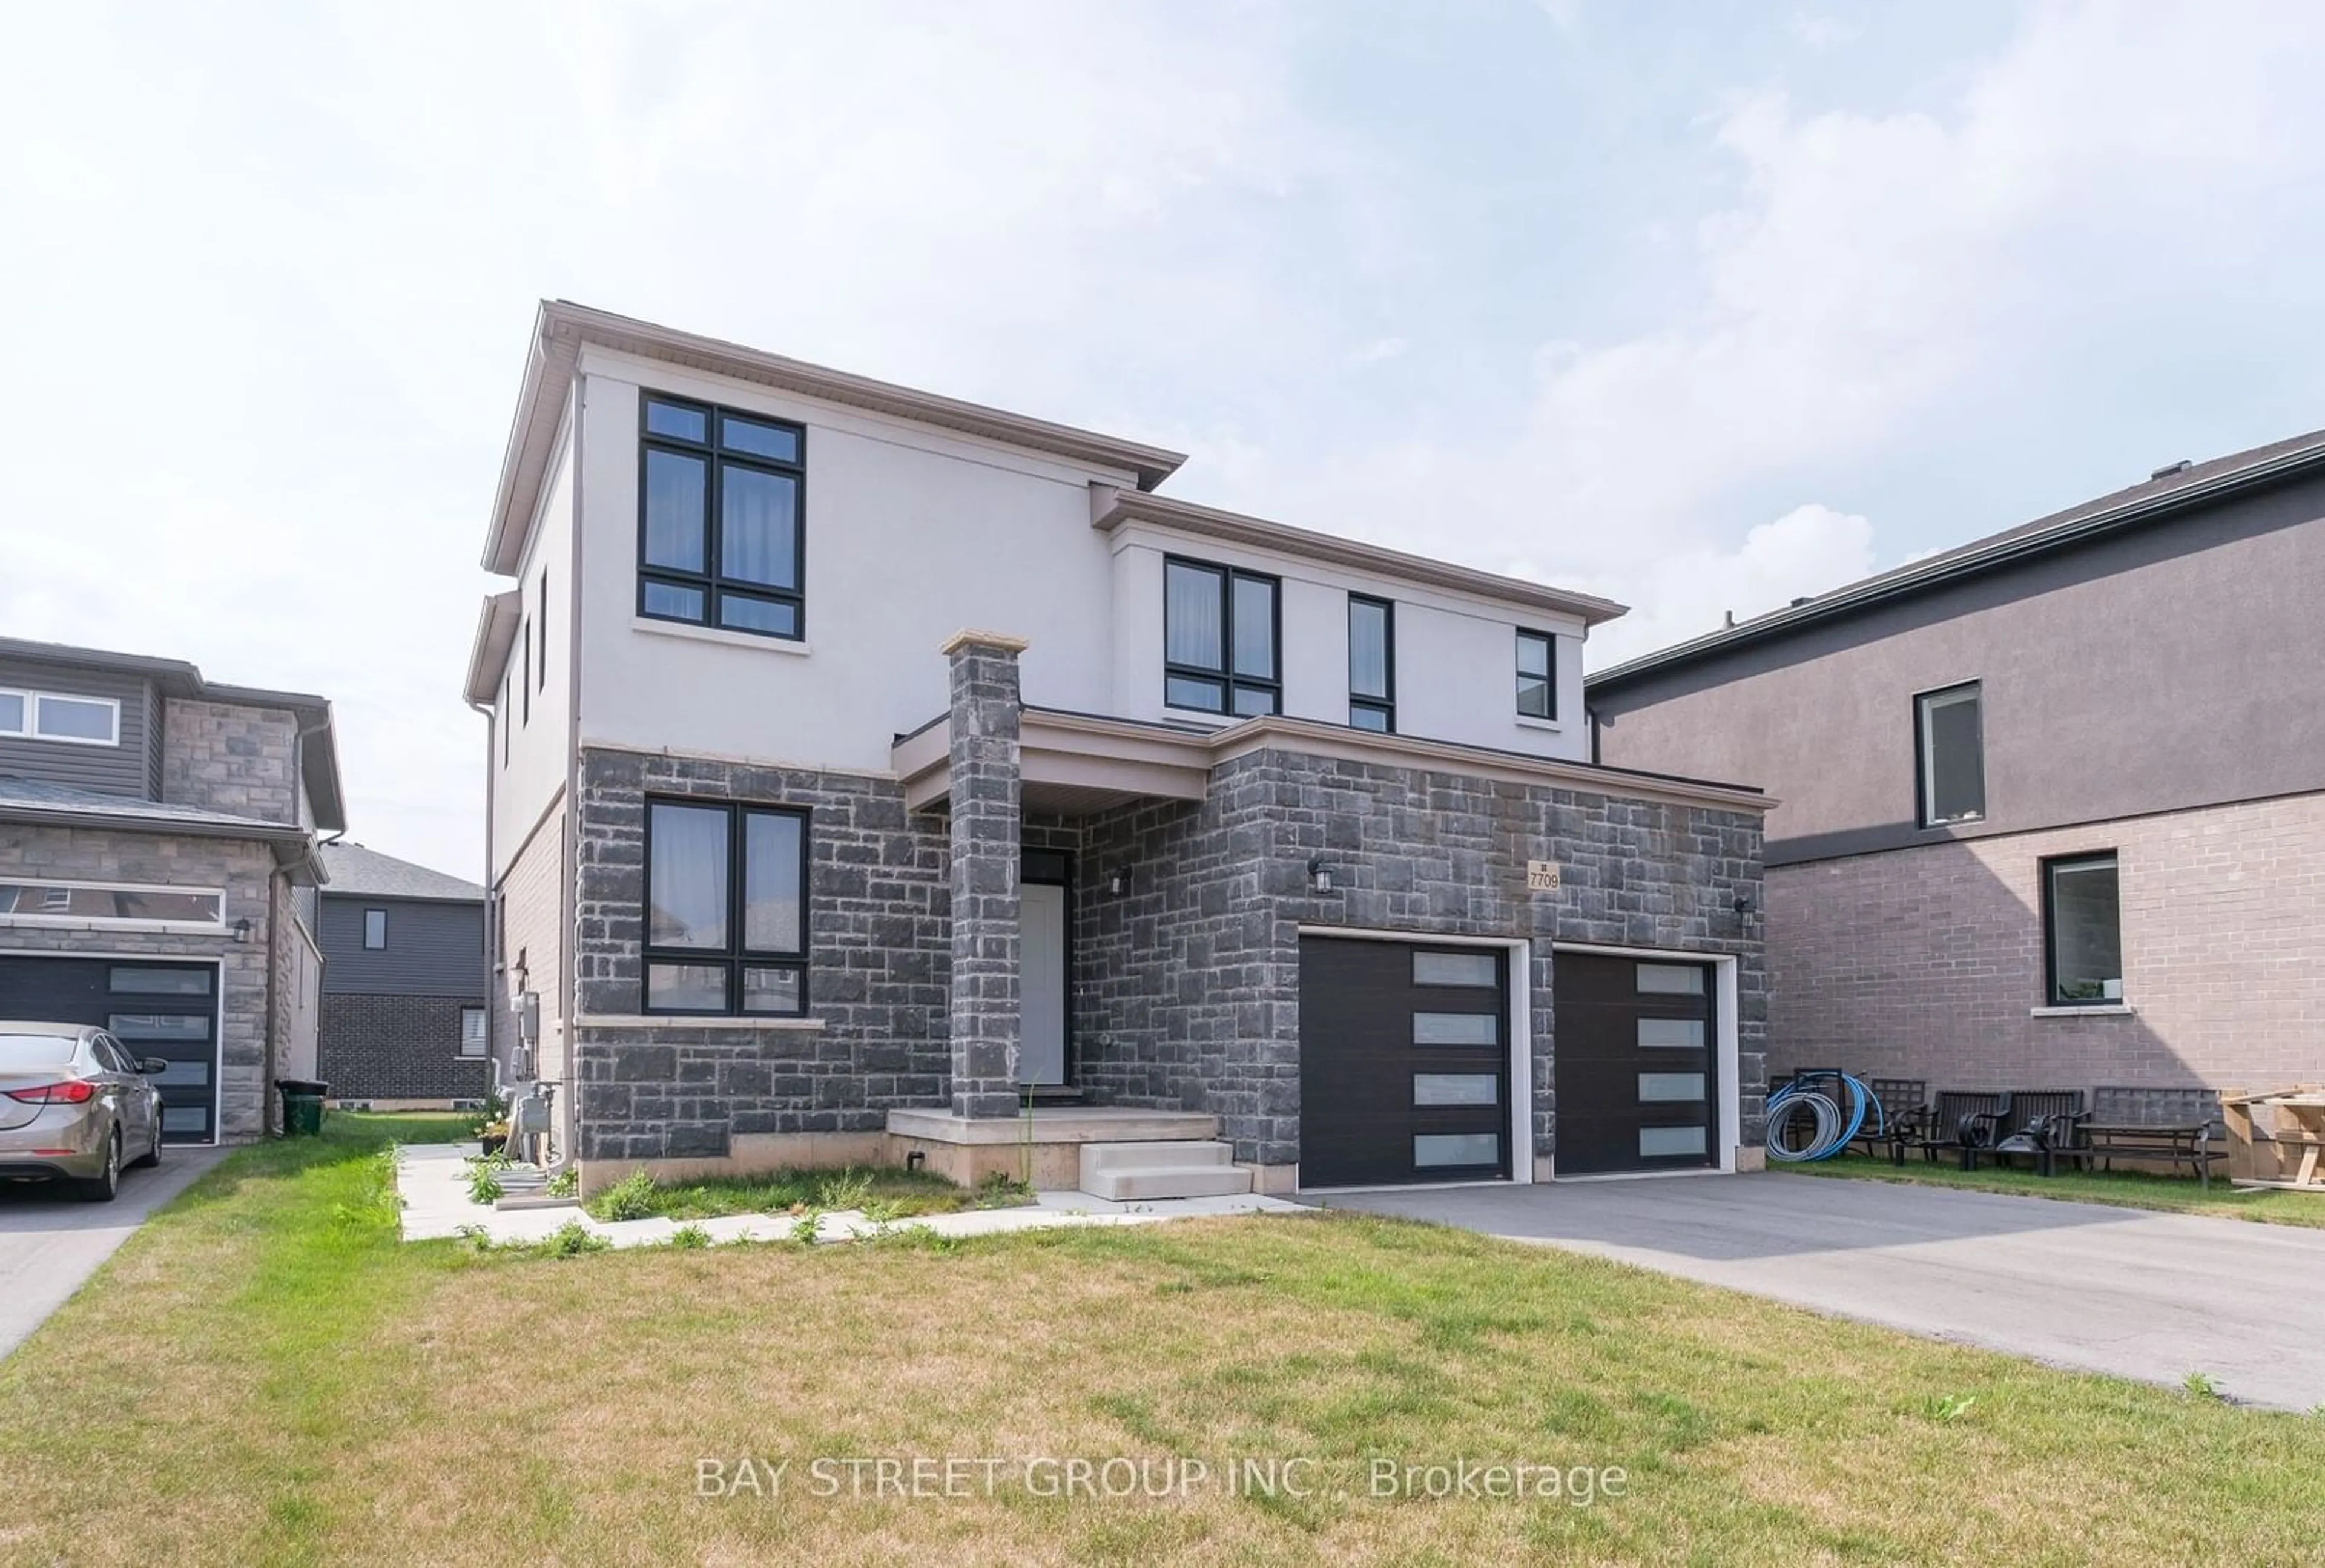 Home with brick exterior material for 7709 Secretariat Crt, Niagara Falls Ontario L2H 3V3